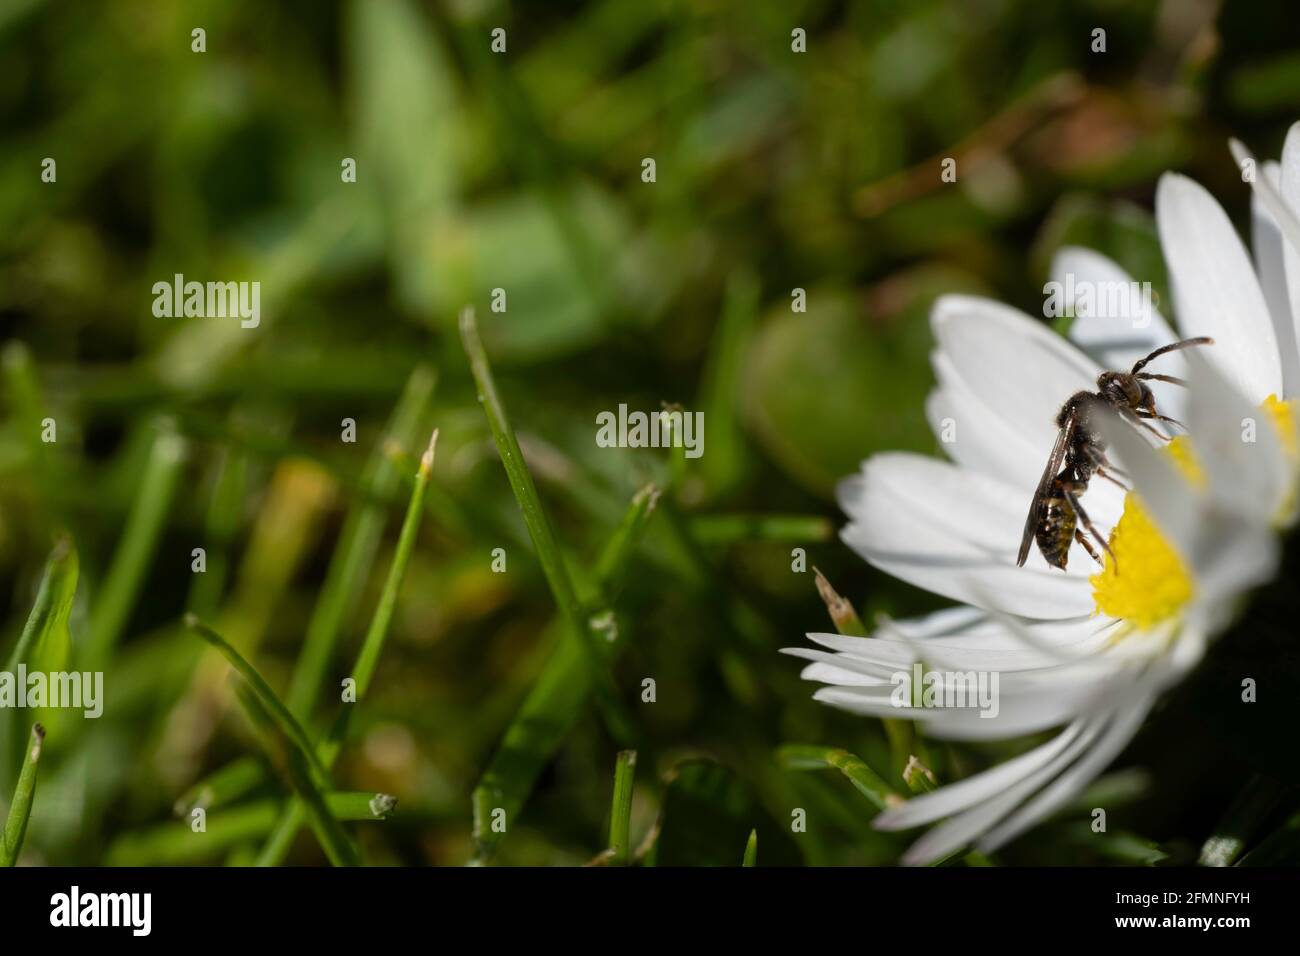 L'insetto cammina sulle ovule gialle al centro di un fiore a margherita nell'erba appena tagliata. Mettere a fuoco sull'insetto Foto Stock